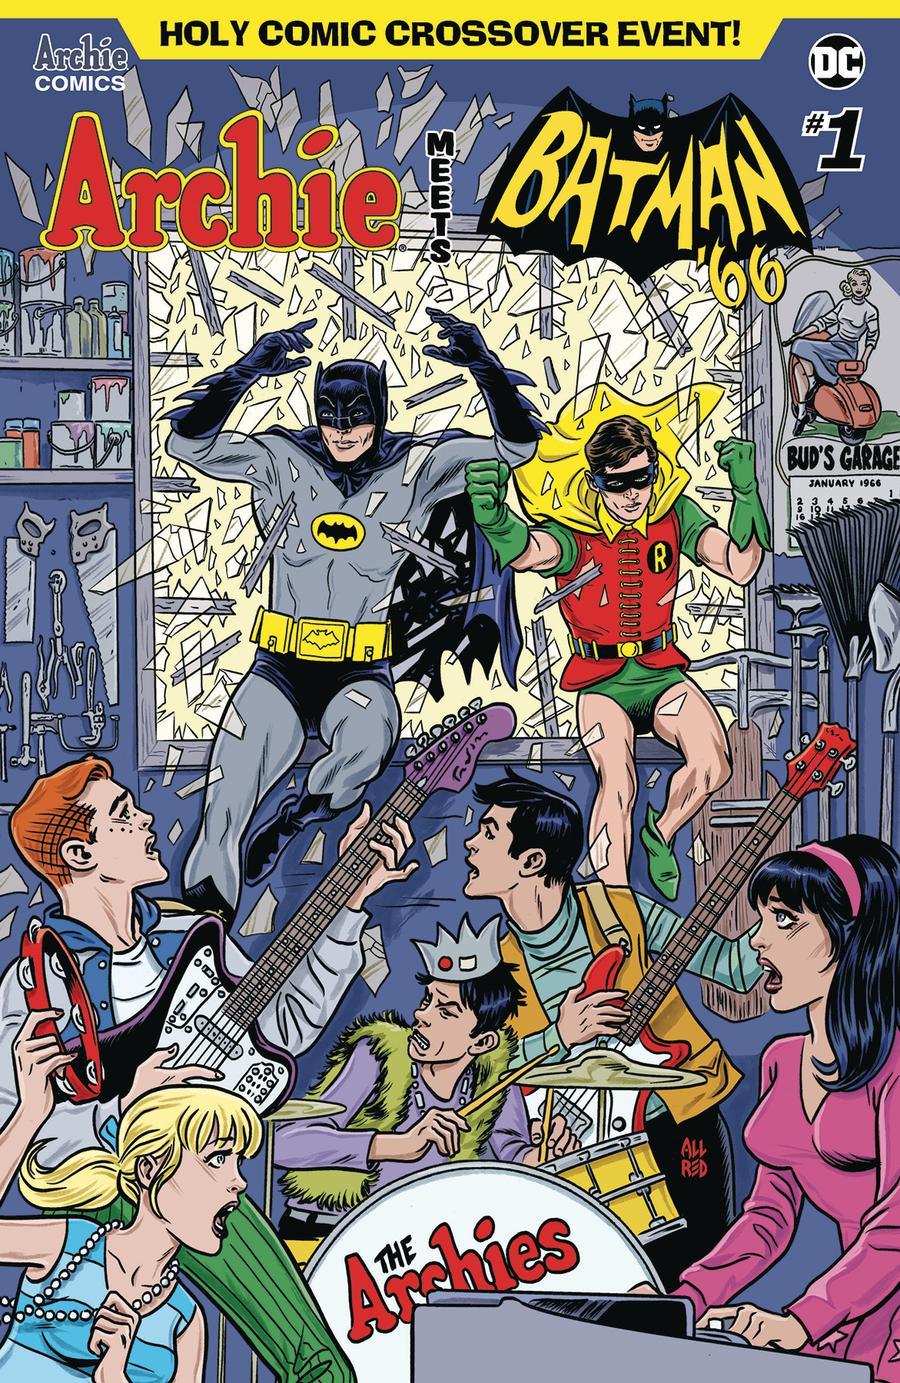 Archie Meets Batman 66 Vol. 1 #1